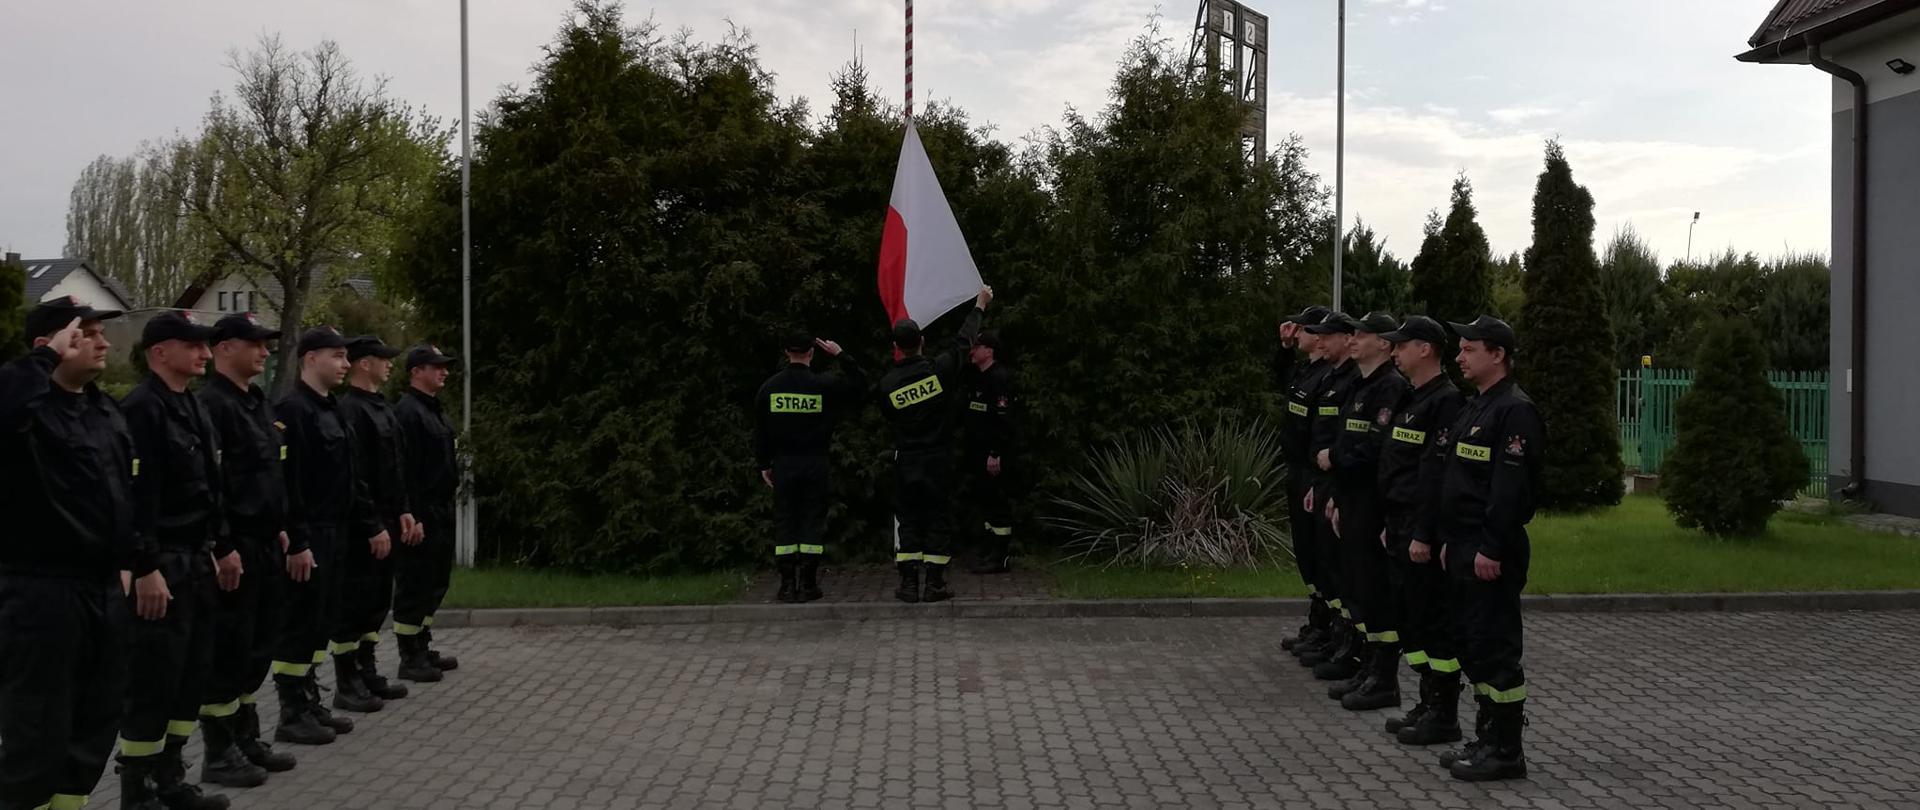 Na zdjęciu widać trzech strażaków, którzy zawieszają flagę Polski na maszcie. Po lewej i prawej stronie stoją strażacy w jednym rzędzie naprzeciwko siebie. W sumie jedenaście osób. Wszyscy ubrani są w czarne stroje z jasnożółtymi odblaskami z napisem straż. Na głowach strażacy mają założone czapki z daszkiem. Uroczysta zbiórka odbywa się na placu manewrowym przed budynkiem Komendy Powiatowej Państwowej Straży Pożarnej w Łęczycy. W tle widać krzewy. Jest widno, ale pochmurnie. 